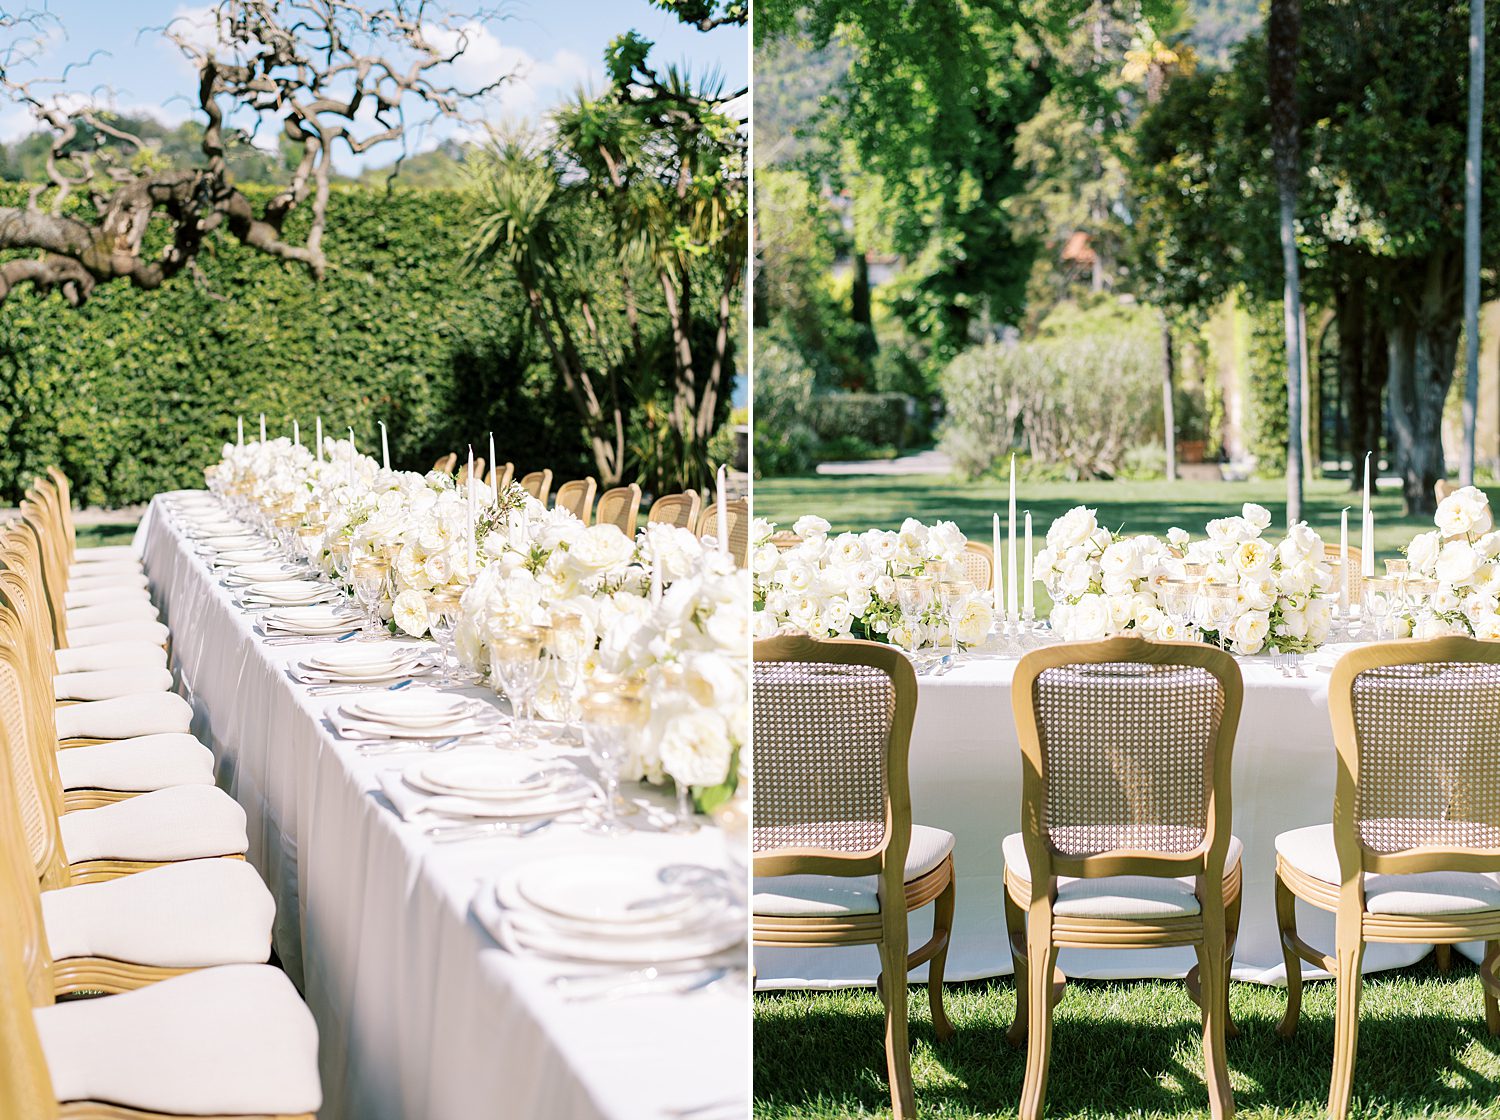 long table at Villa Balbiano for wedding reception in garden 